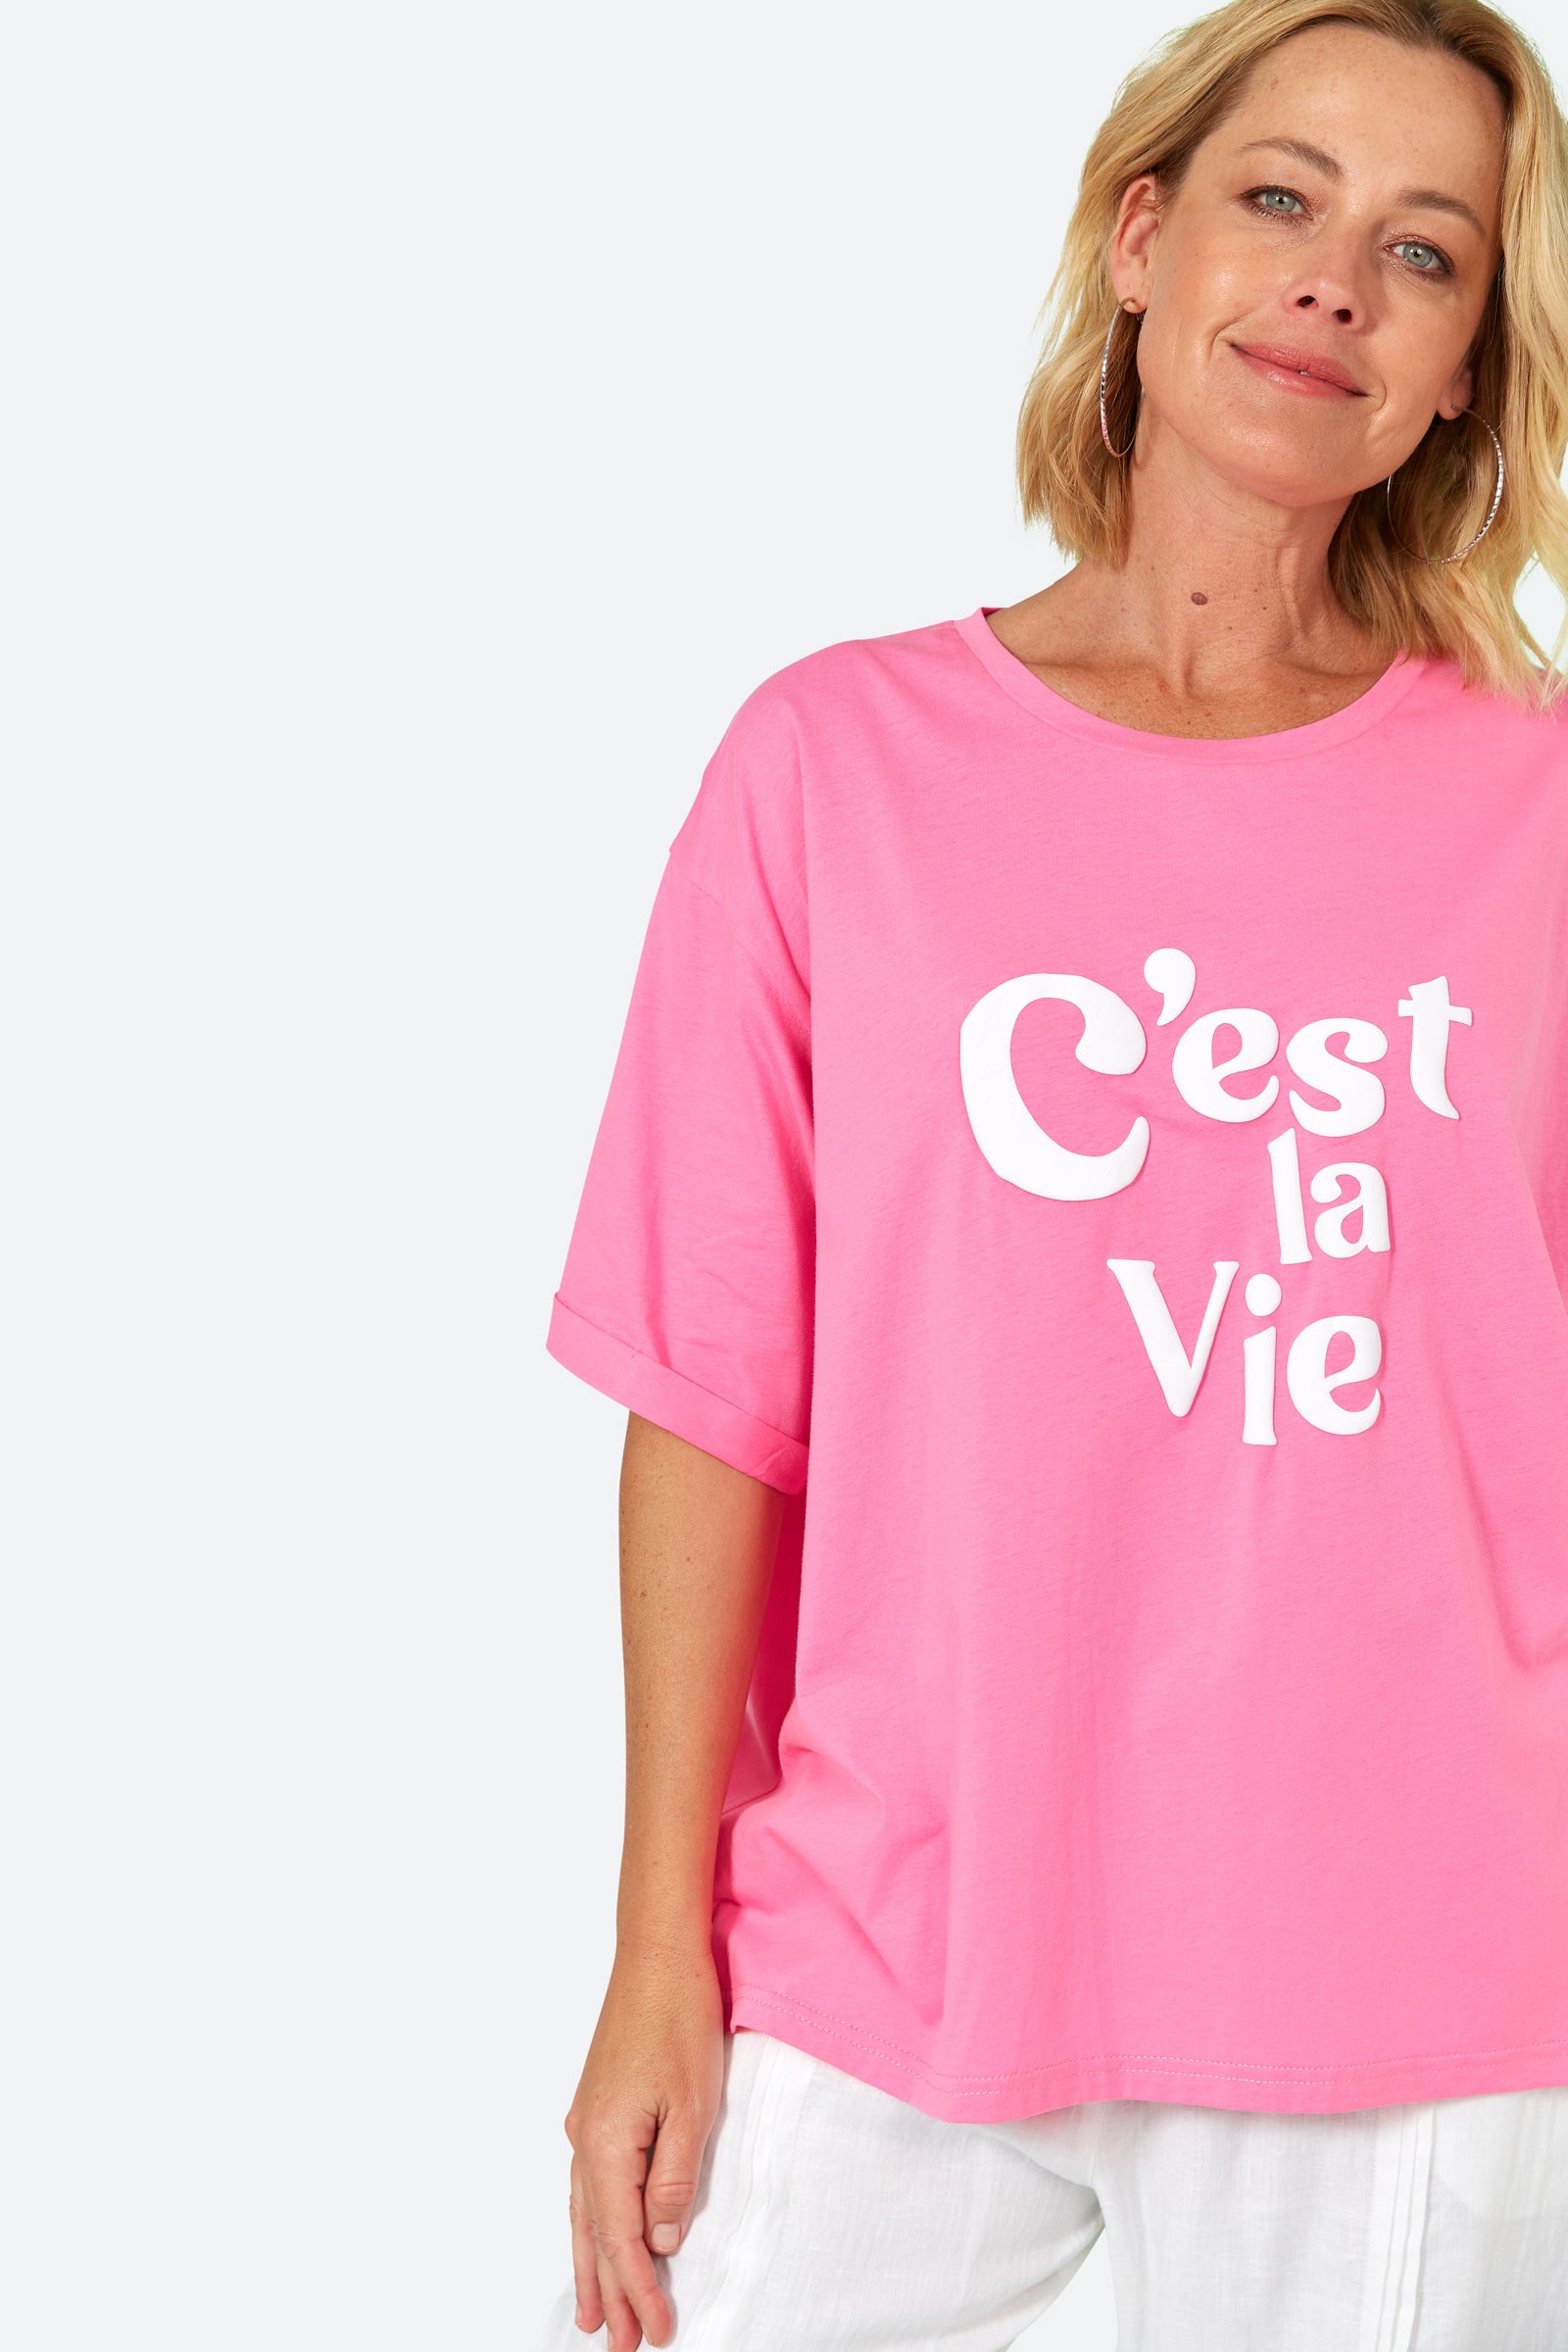 C'est La Vie Tshirt - Candy - eb&ive Clothing - Top Tshirt S/S One Size